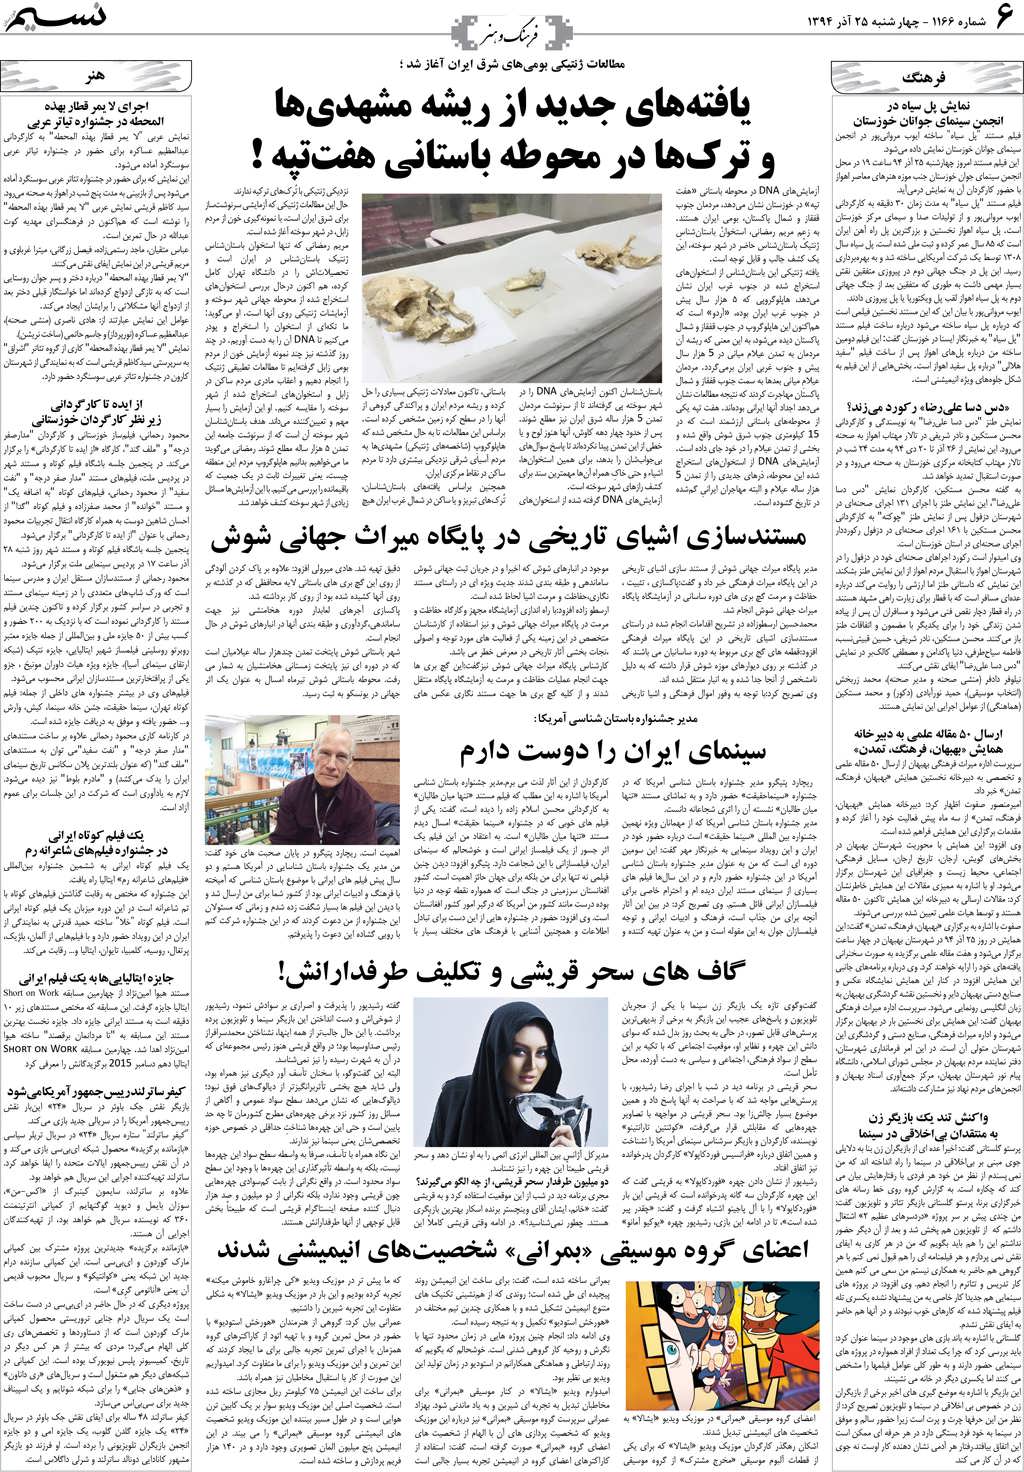 صفحه فرهنگ و هنر روزنامه نسیم شماره 1166